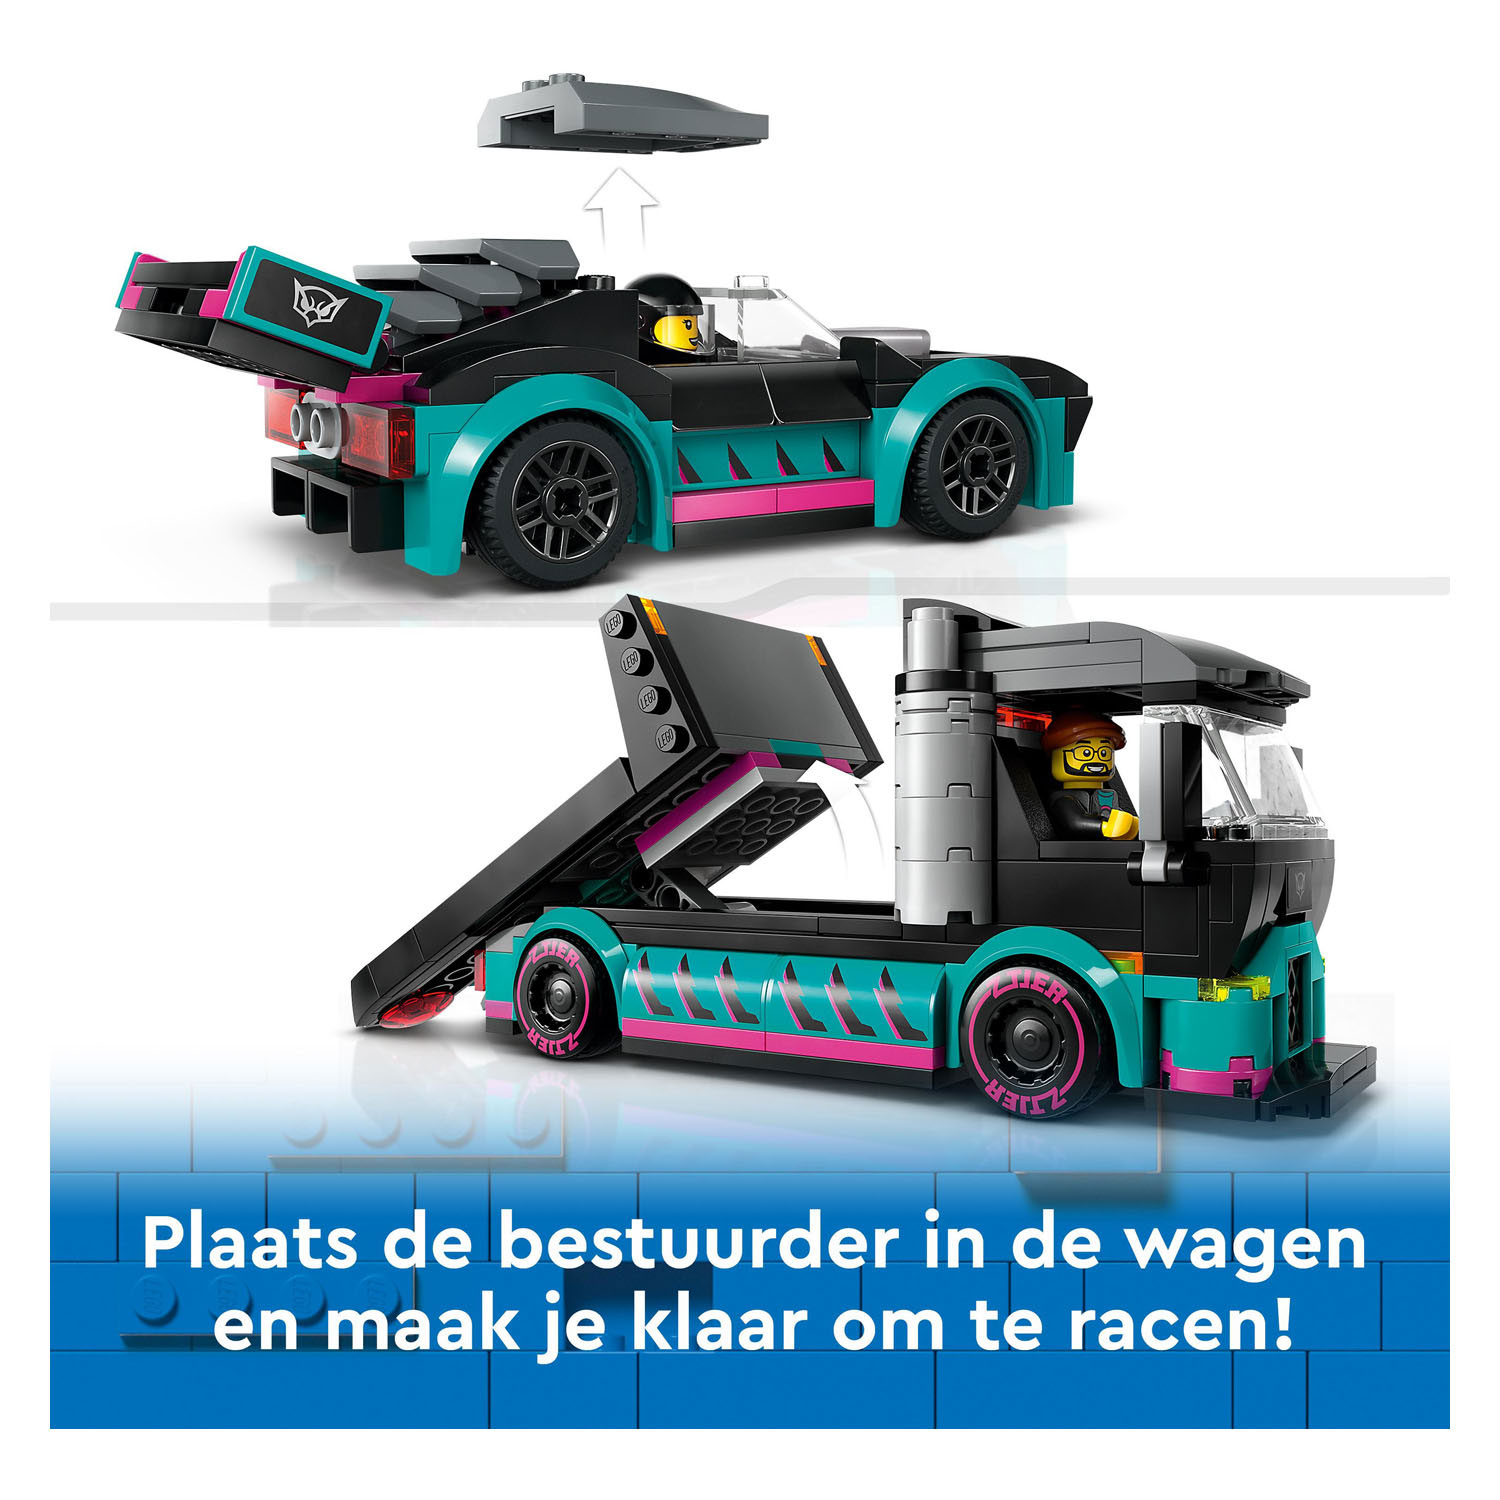 LEGO City 60406 Voiture de course et camion de transport